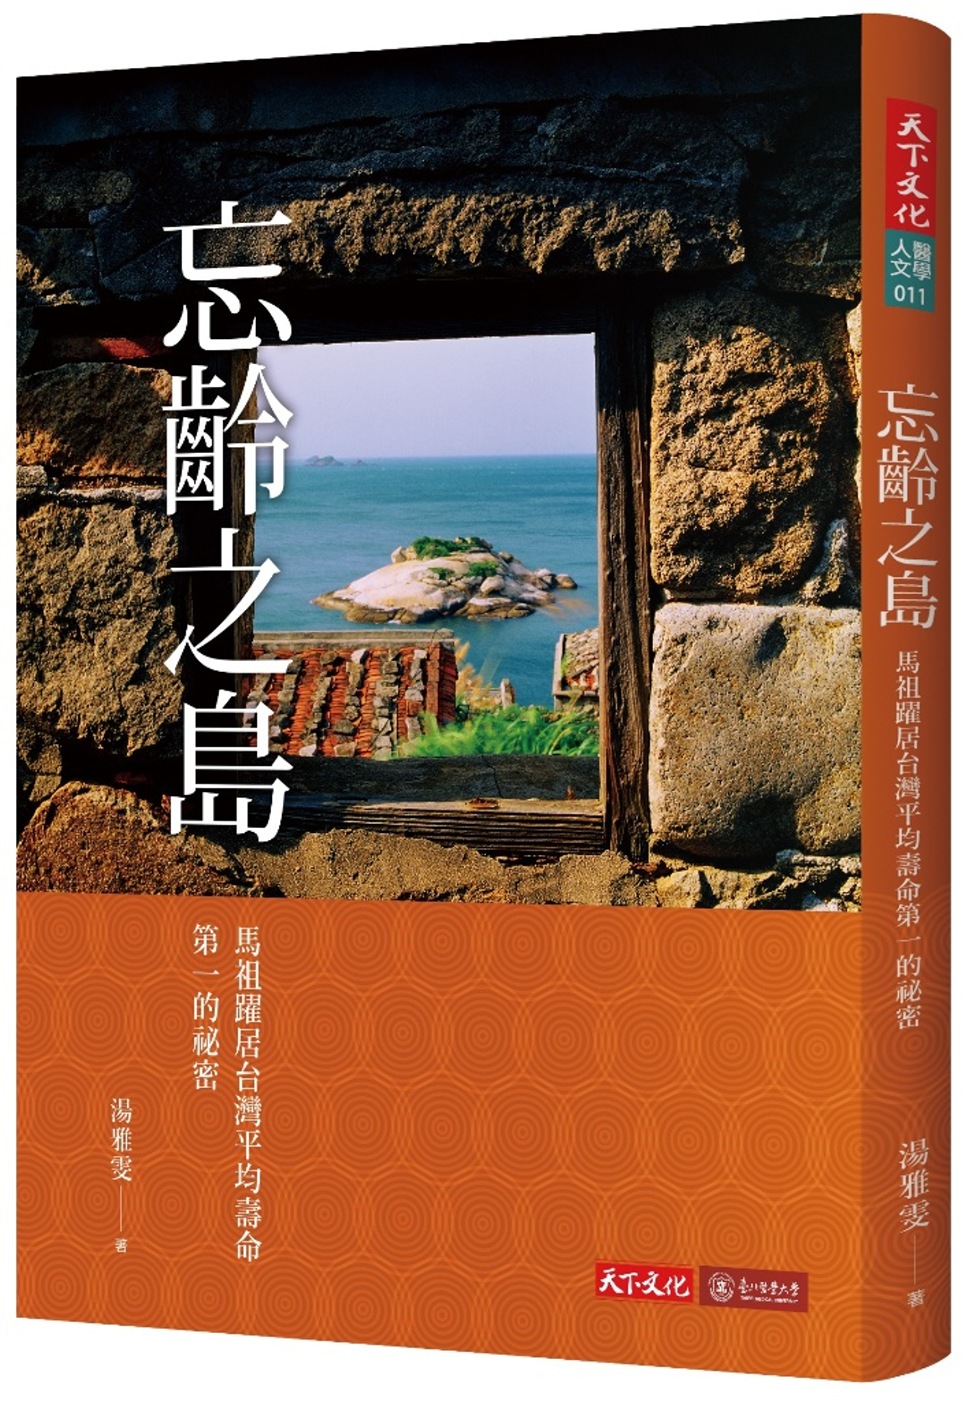 忘齡之島：馬祖躍居台灣平均壽命第一的祕密